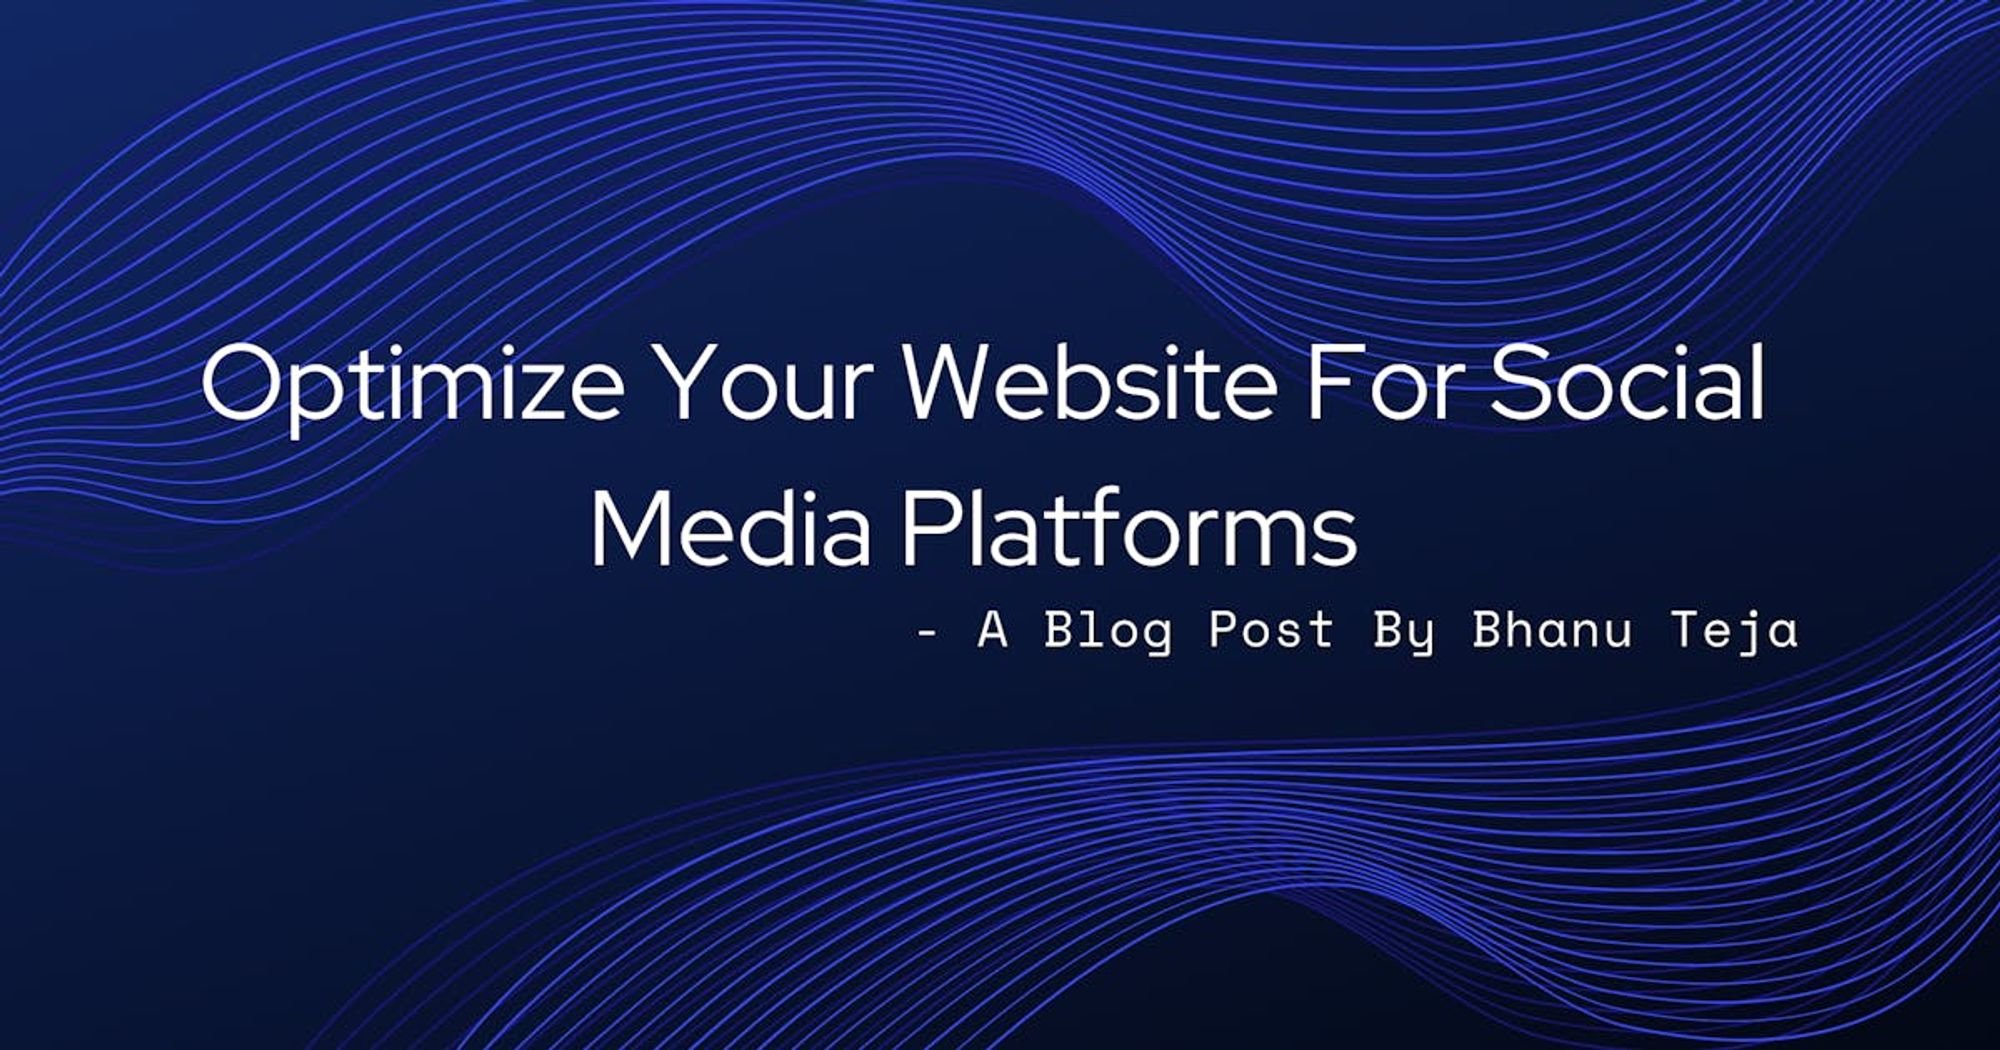 Optimize Your Website For Social Media Platforms